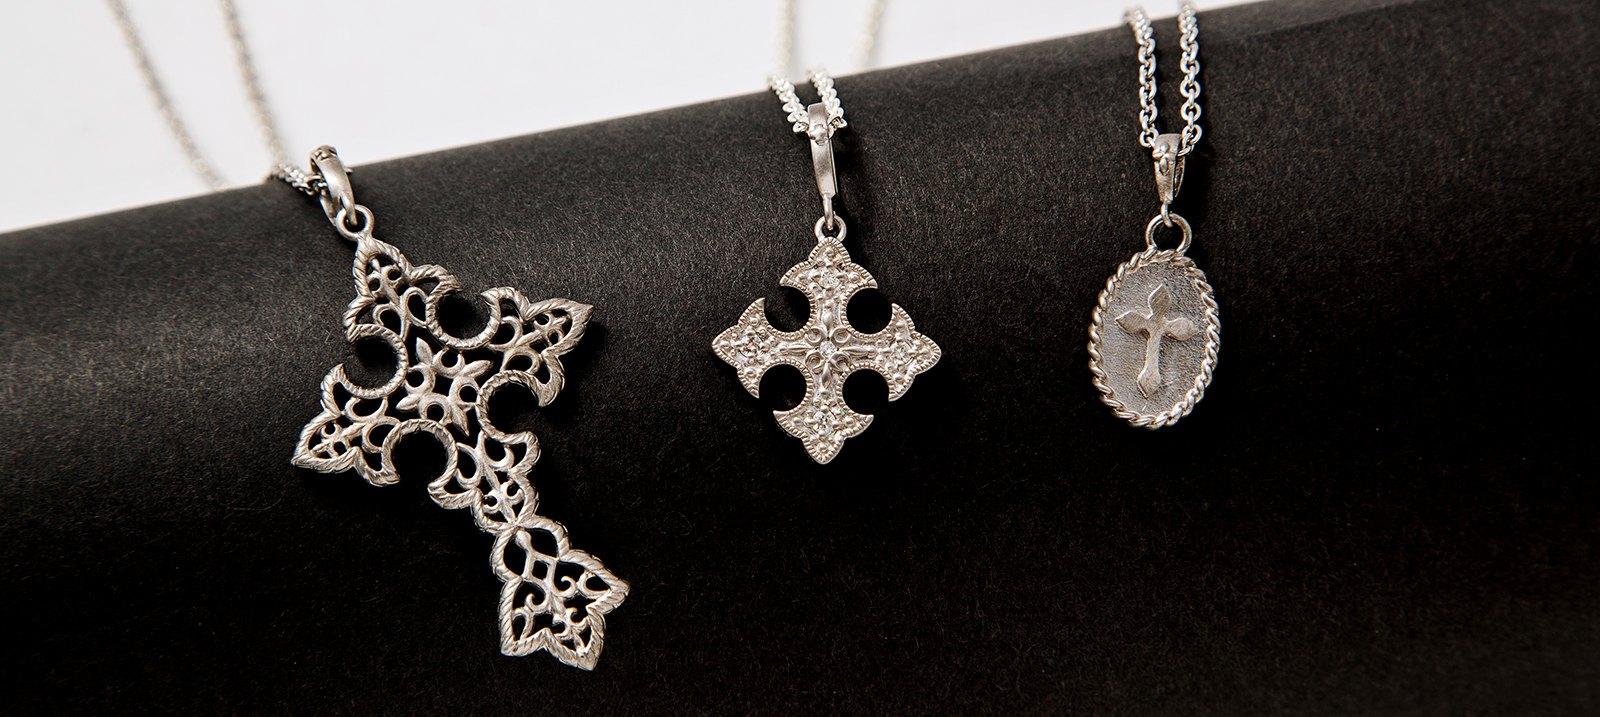 Silver Cross Jewelry